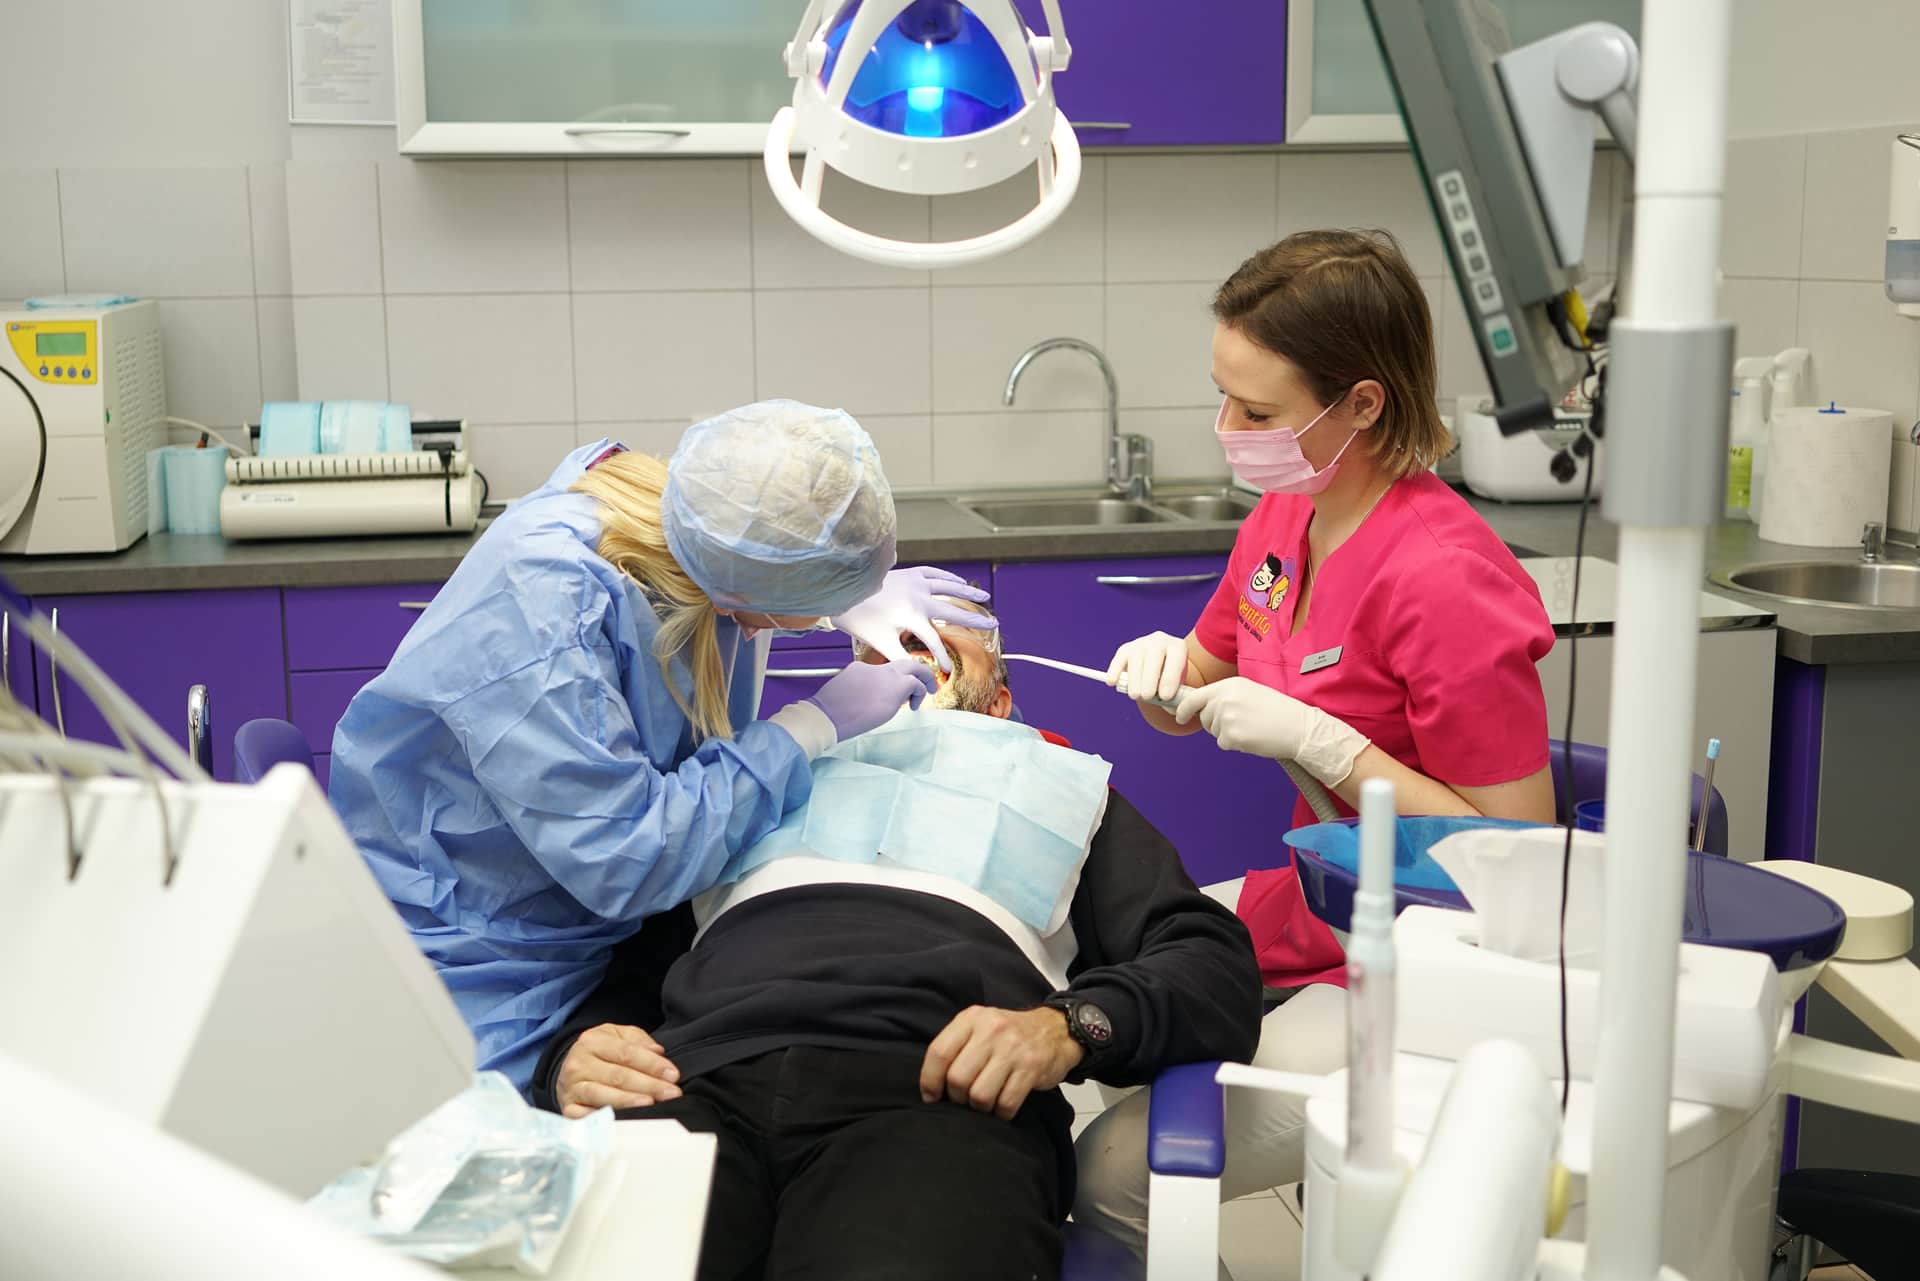 Pełen zakres leczenia chirurgicznego w DentiCO Stomatologia Chirurgia stomatologiczna Dentico gotdsc01700 4